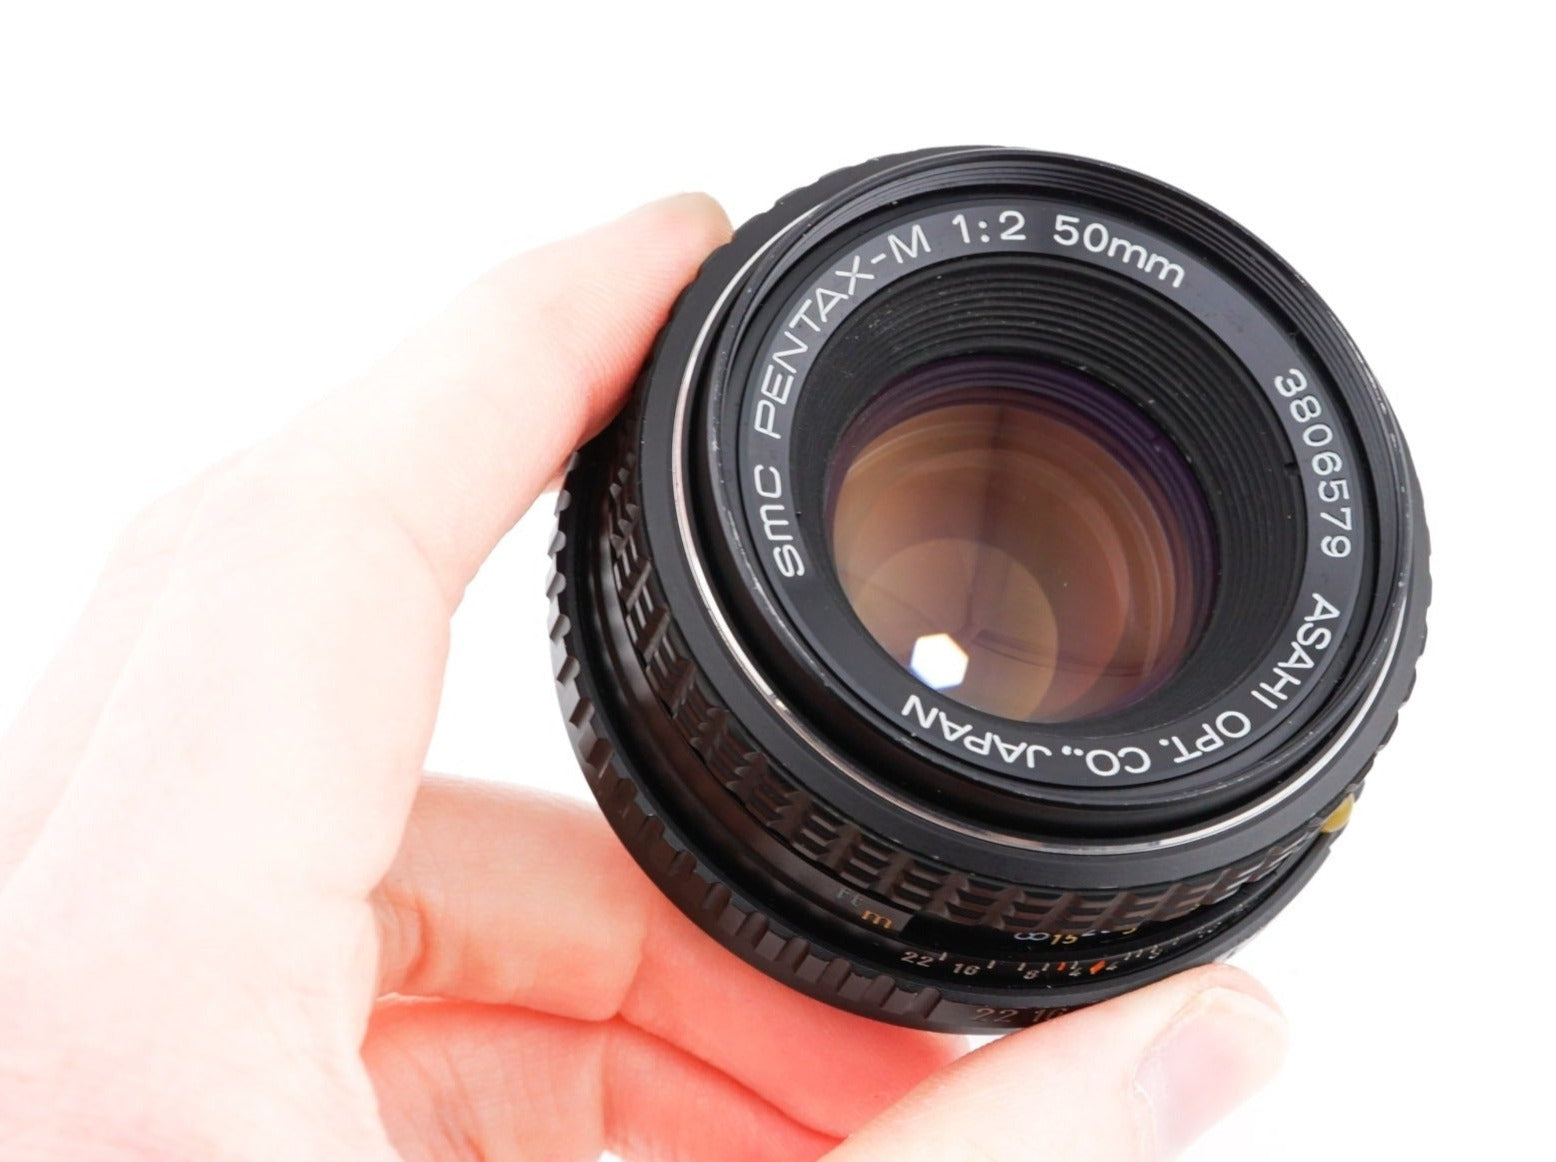 Lens for Pentax K1000 35mm film camera